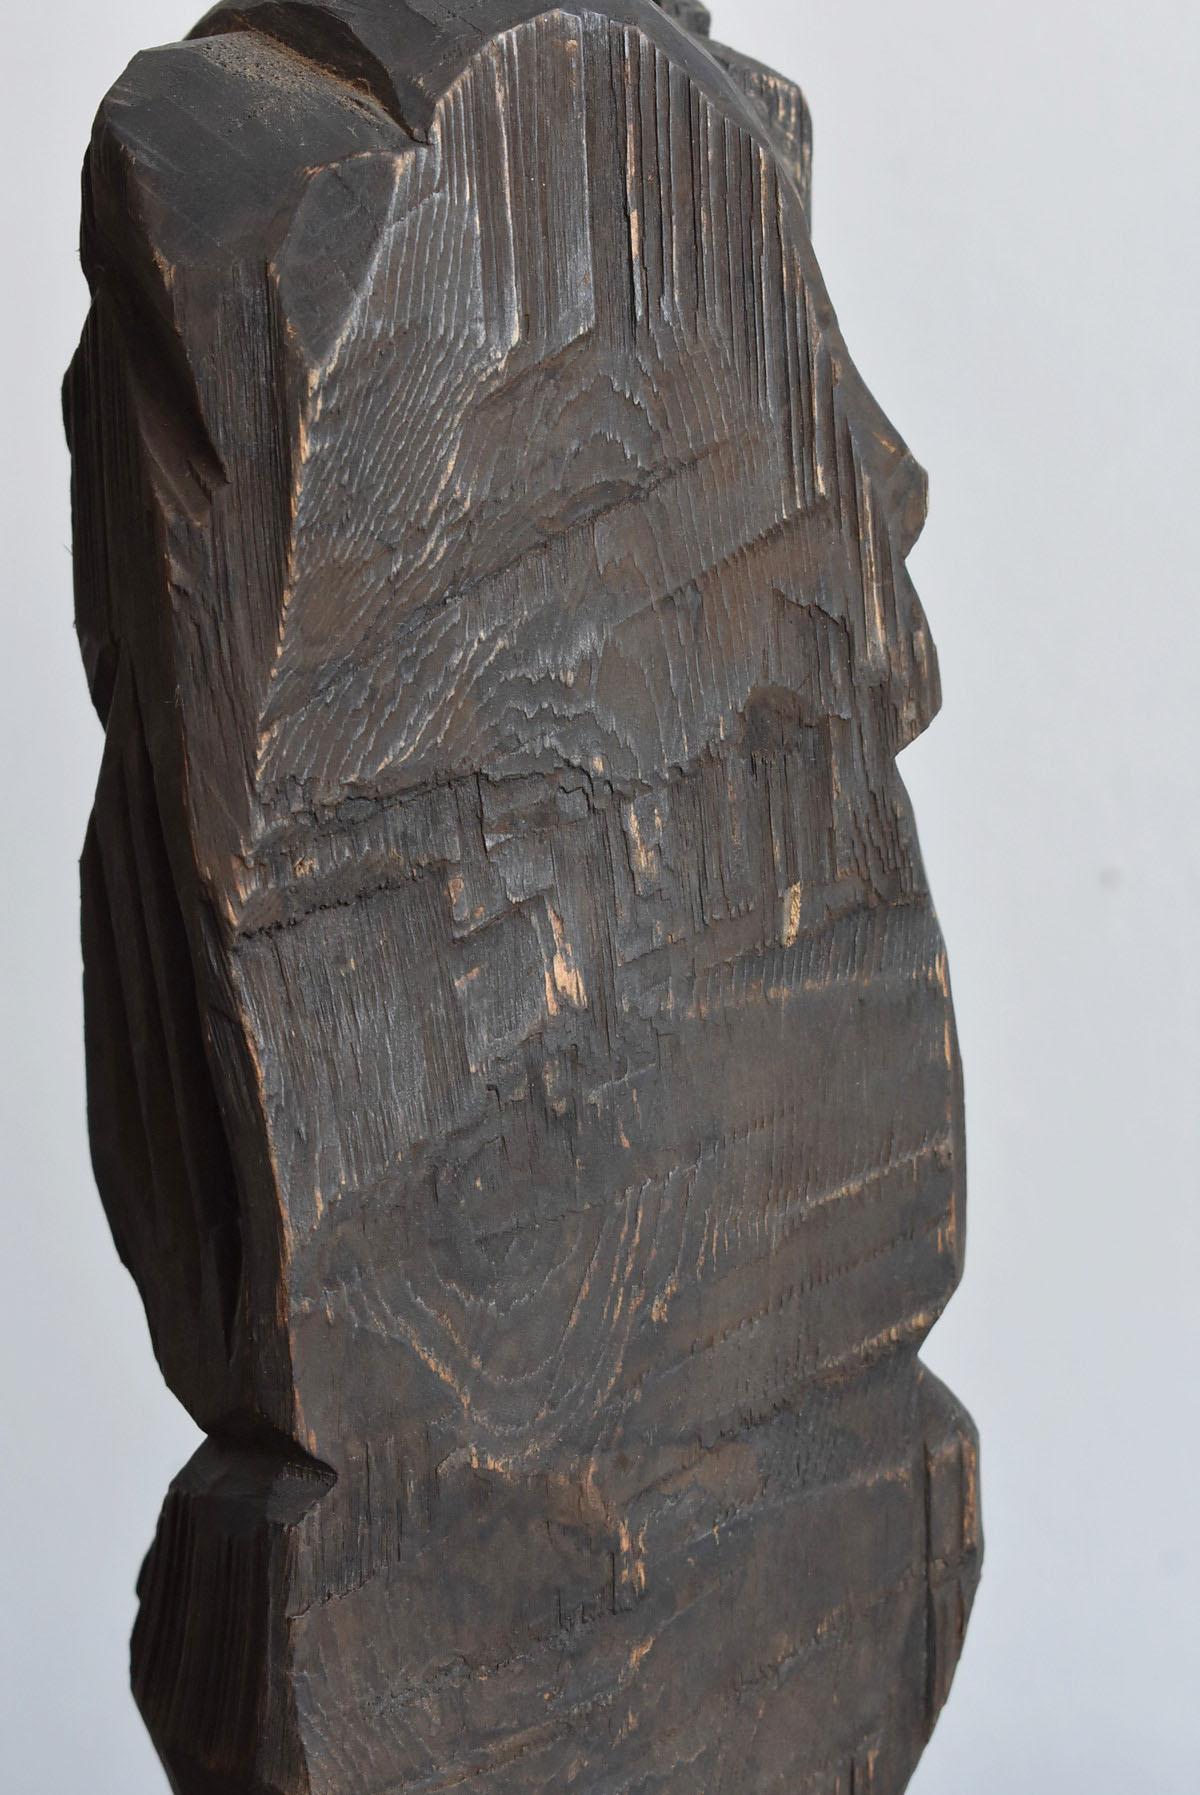 Cypress Japanese Antique Wood Carving Daikokuten / Folk Art Sculpture / Buddha Statue